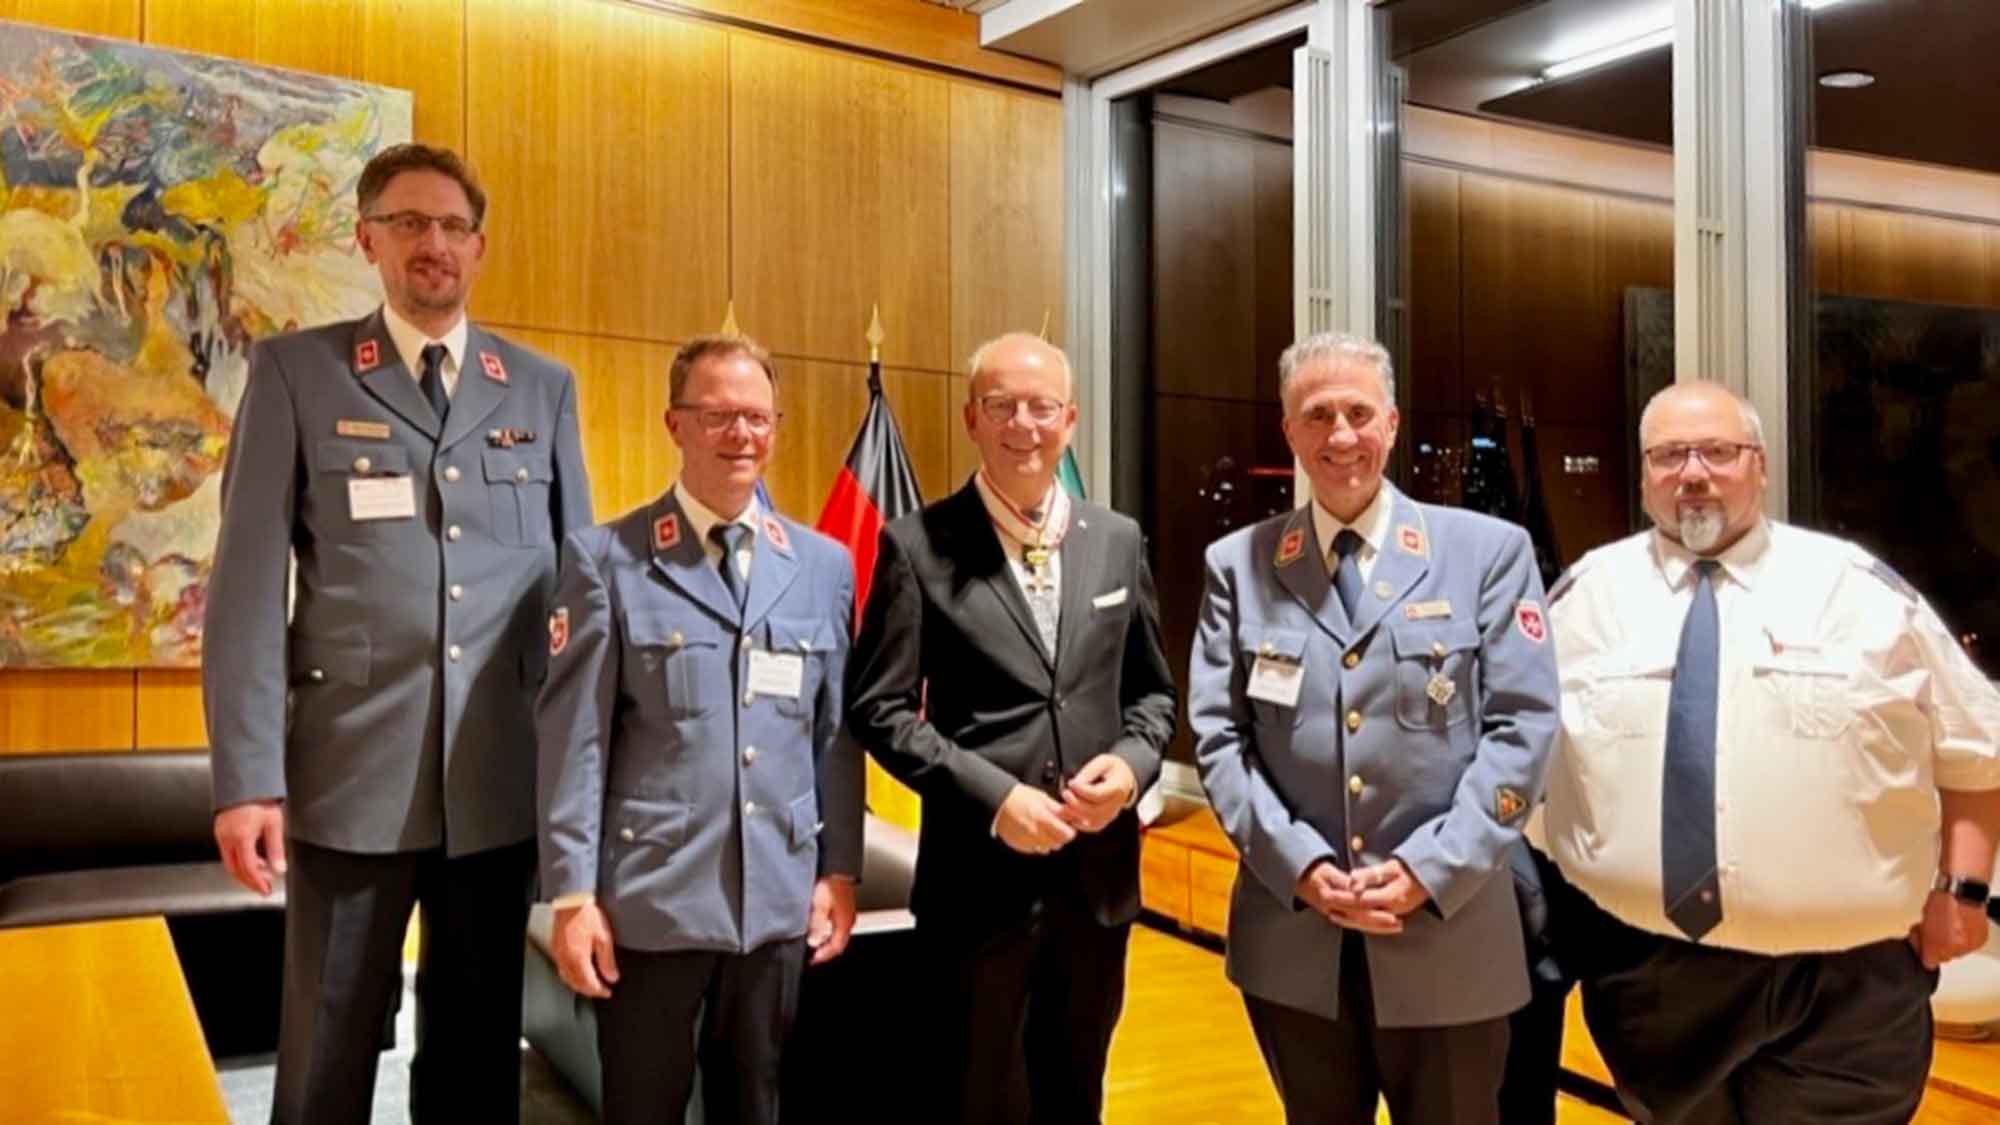 Malteser Hilfsdienst, Landtagspräsident André Kuper mit Kommandeurkreuz des Malteser Ritterordens ausgezeichnet